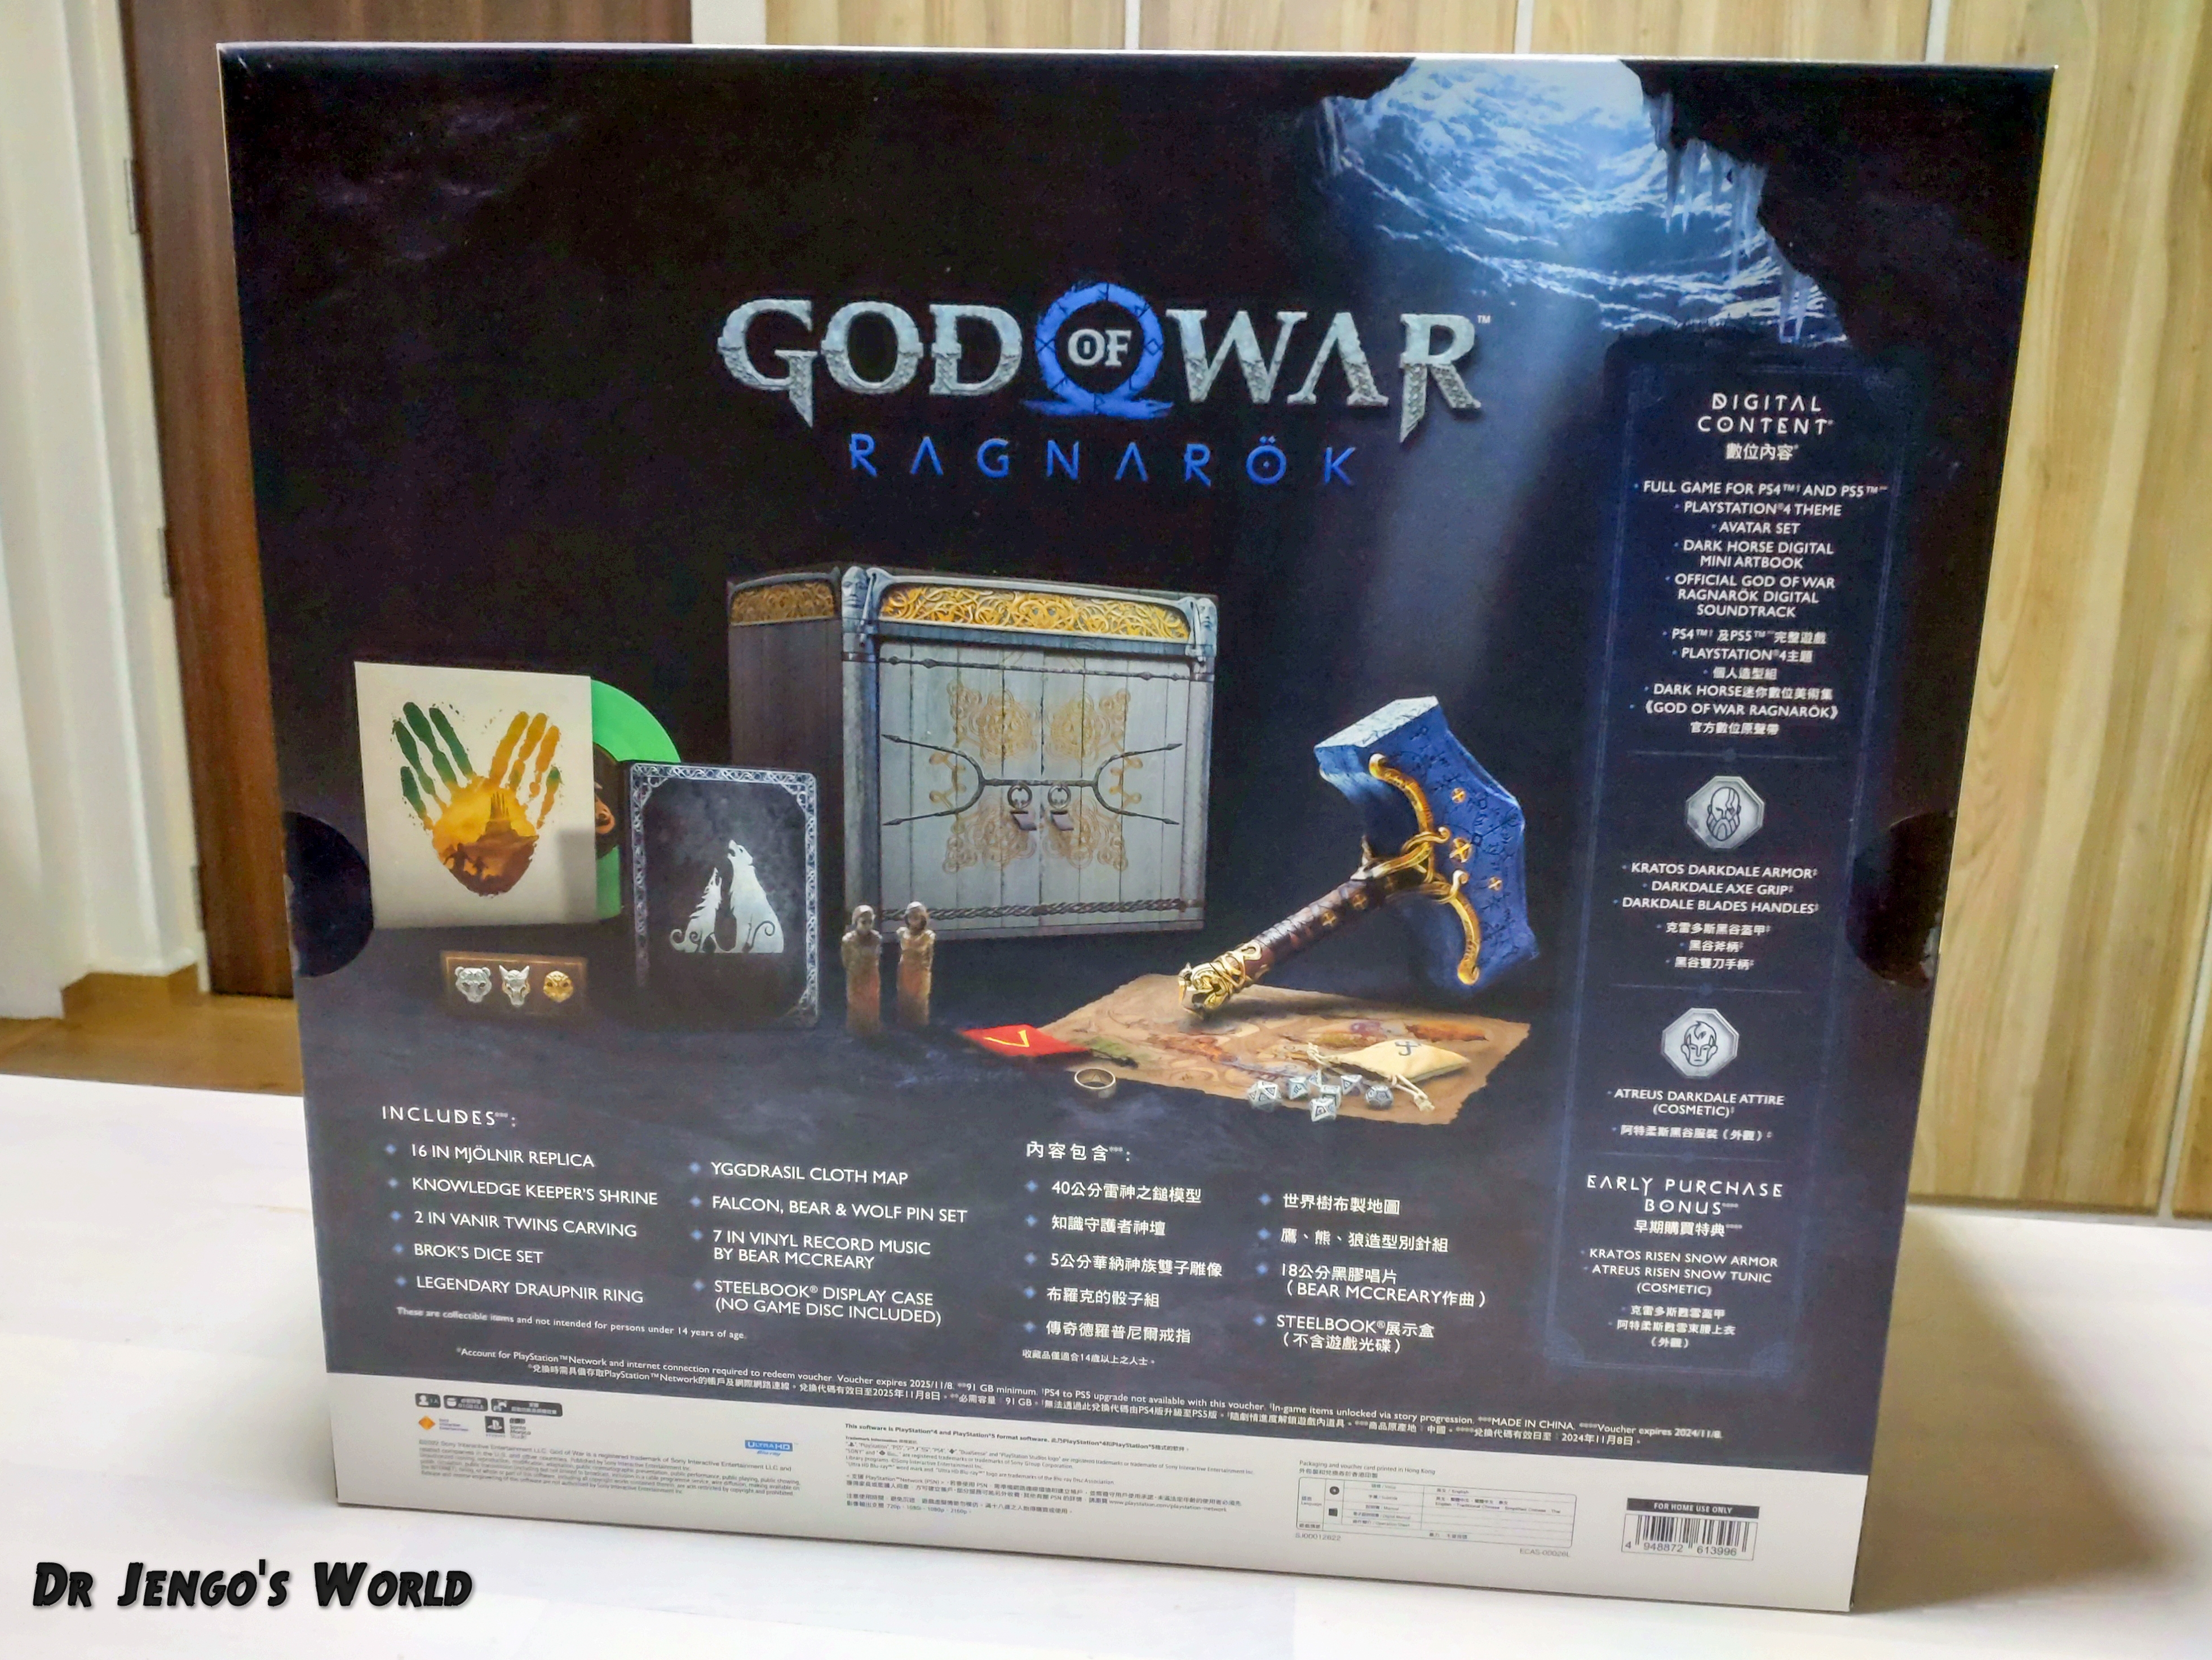 God of War: Ragnarök - Jötnar Edition (Playstation 5) – igabiba